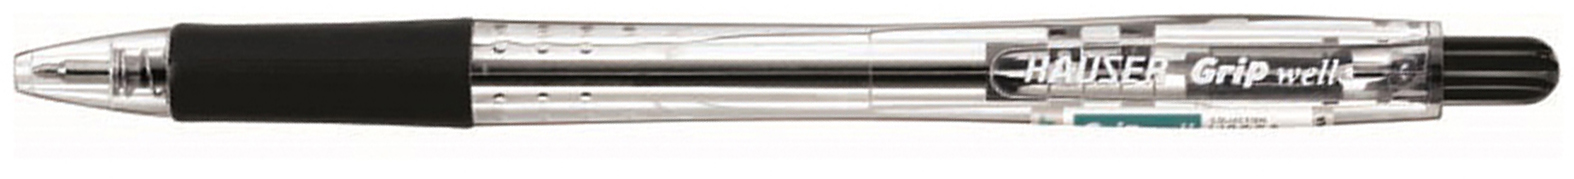 Шариковая ручка HAUSER Grip-Well H6029-black